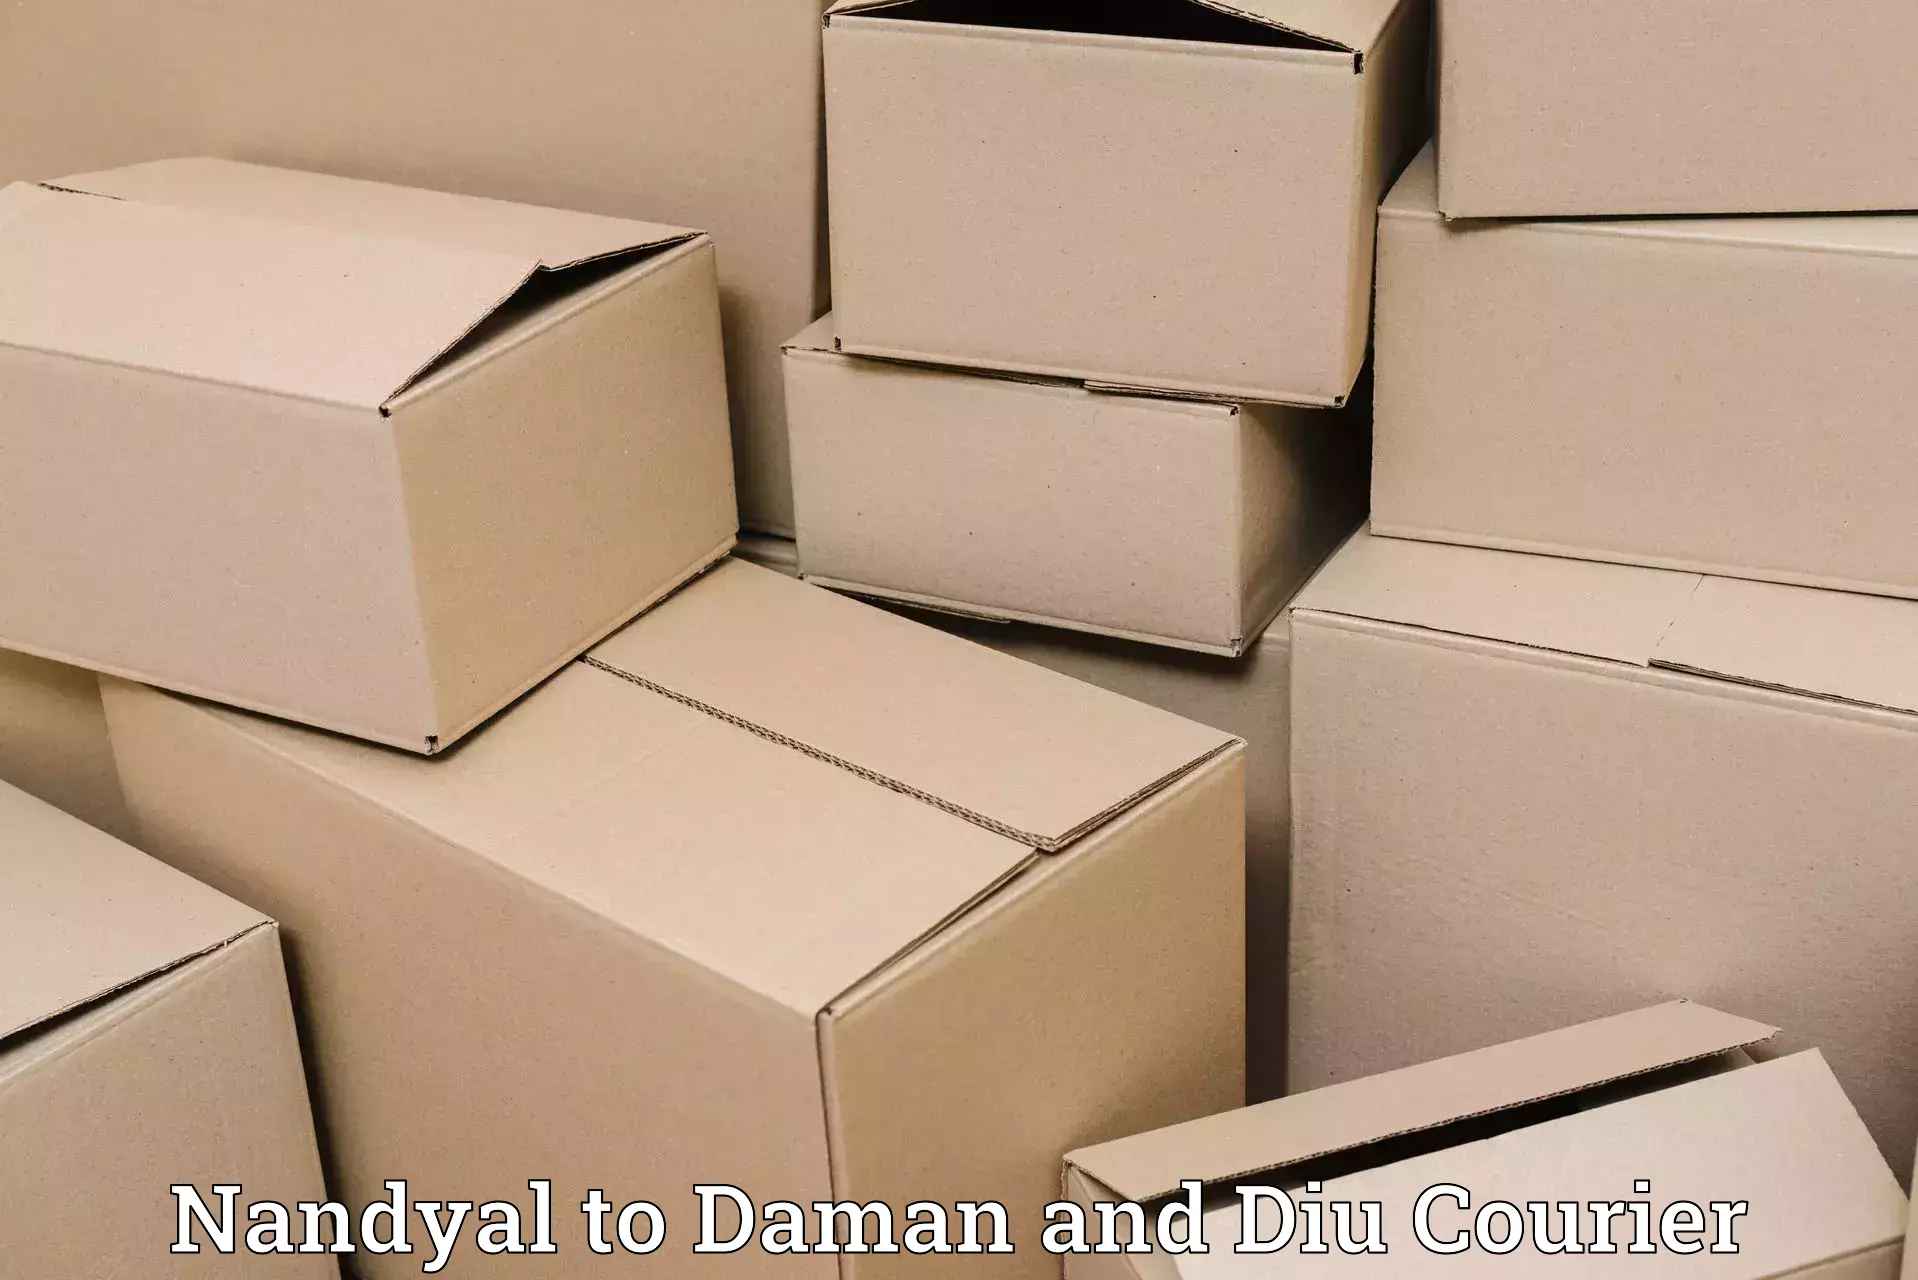 Nationwide shipping coverage Nandyal to Daman and Diu